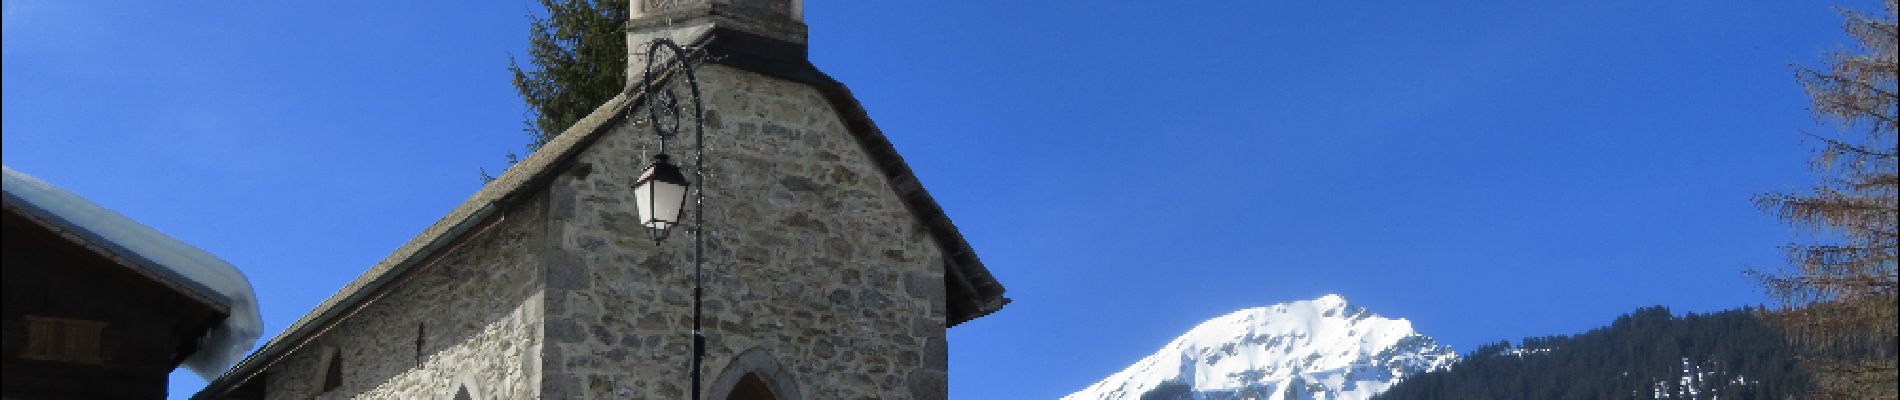 Randonnée Raquettes à neige Châtel - Randonnée entre la France et la suisse  - Photo